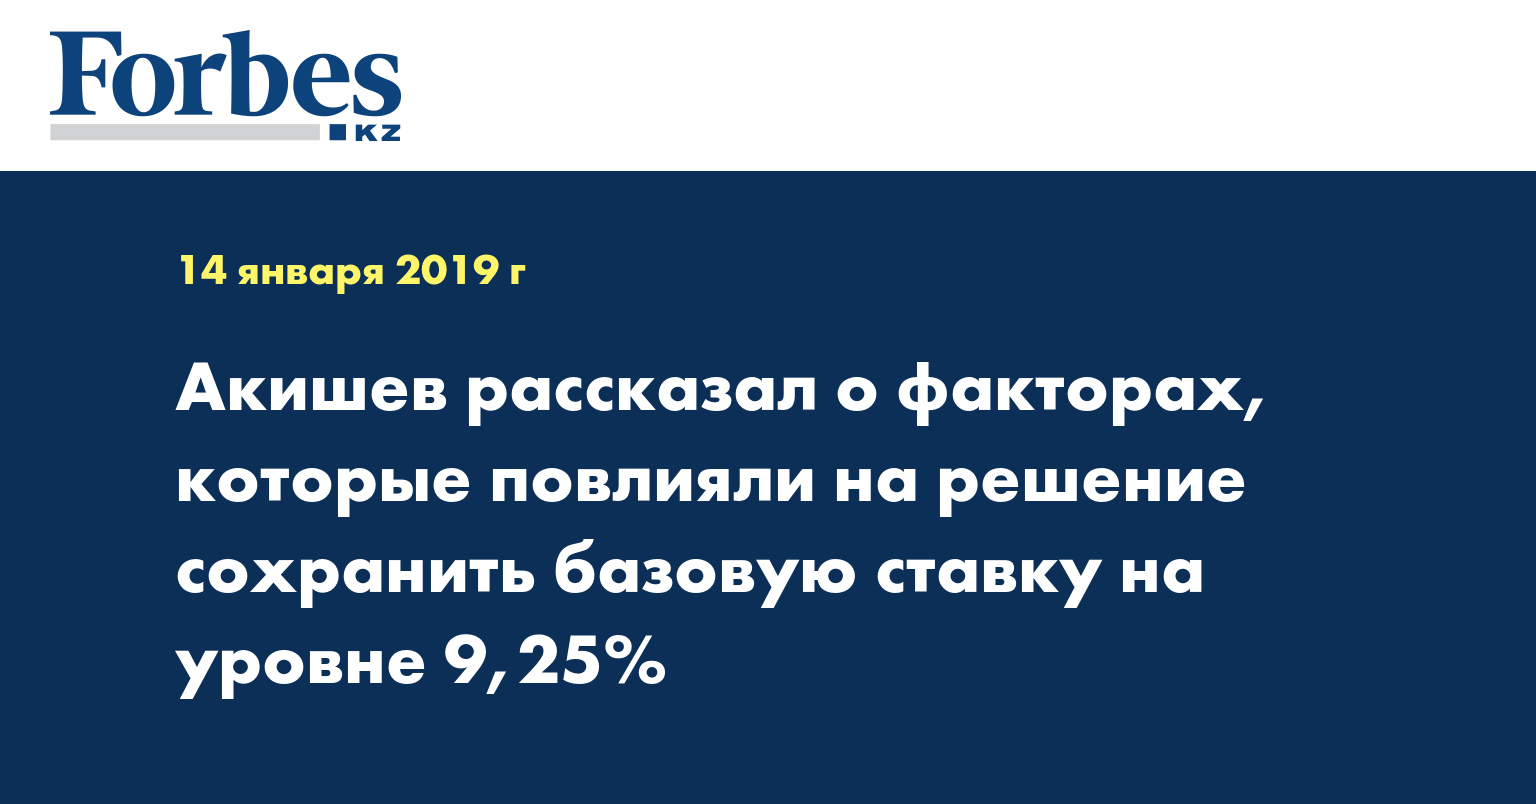 Акишев рассказал о факторах, которые повлияли на решение сохранить базовую ставку на уровне 9,25%